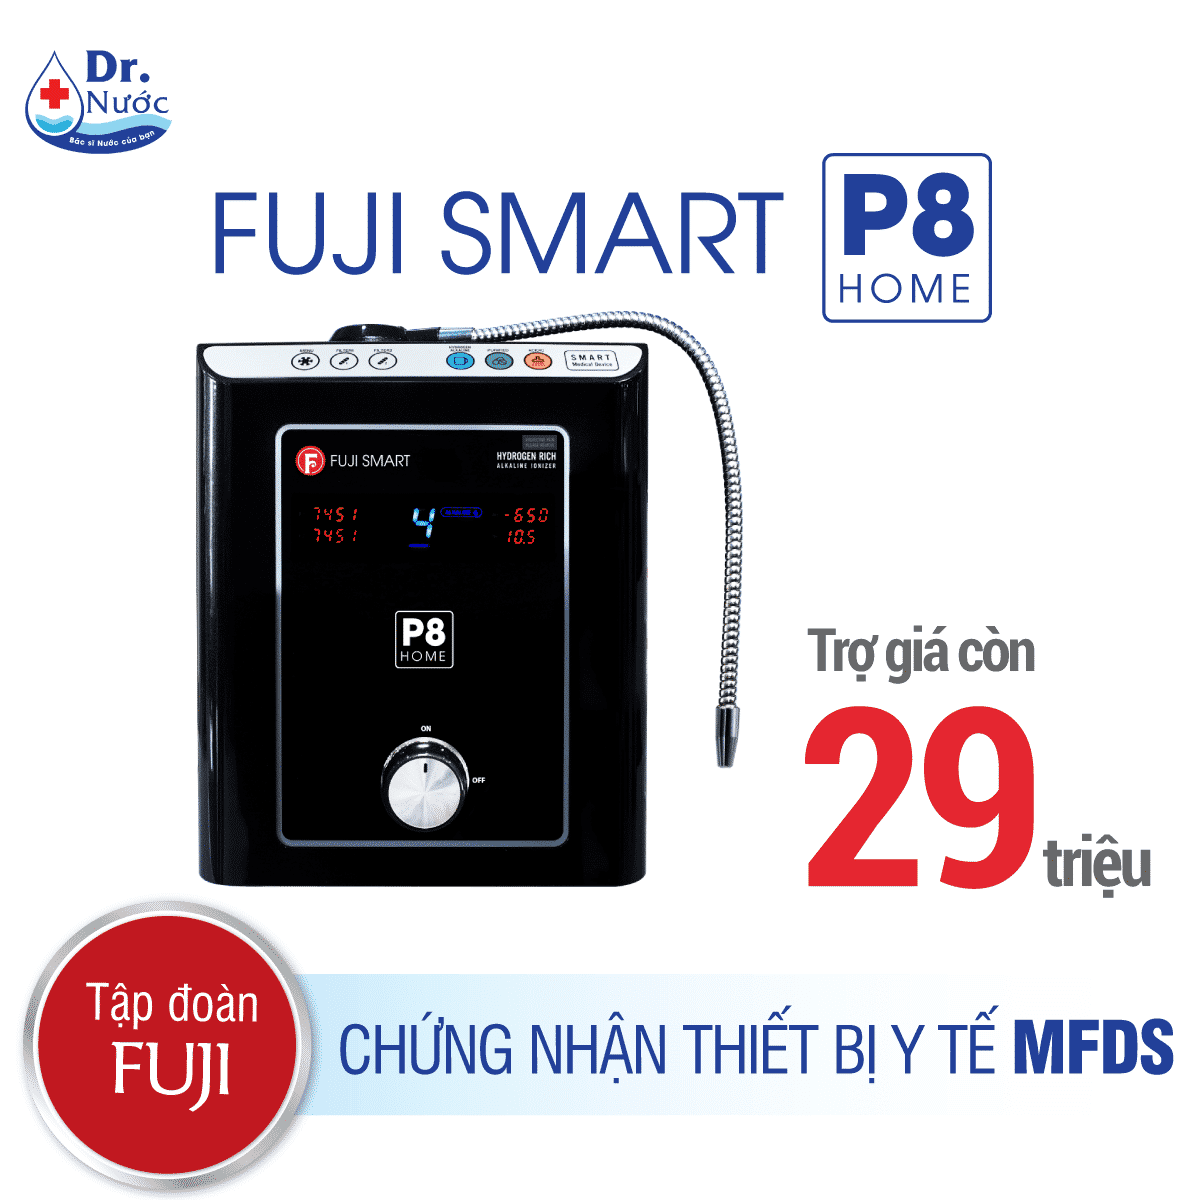 Máy thanh lọc nước ion kiềm Fuji Smart P8 trang chủ giá chỉ rẻ